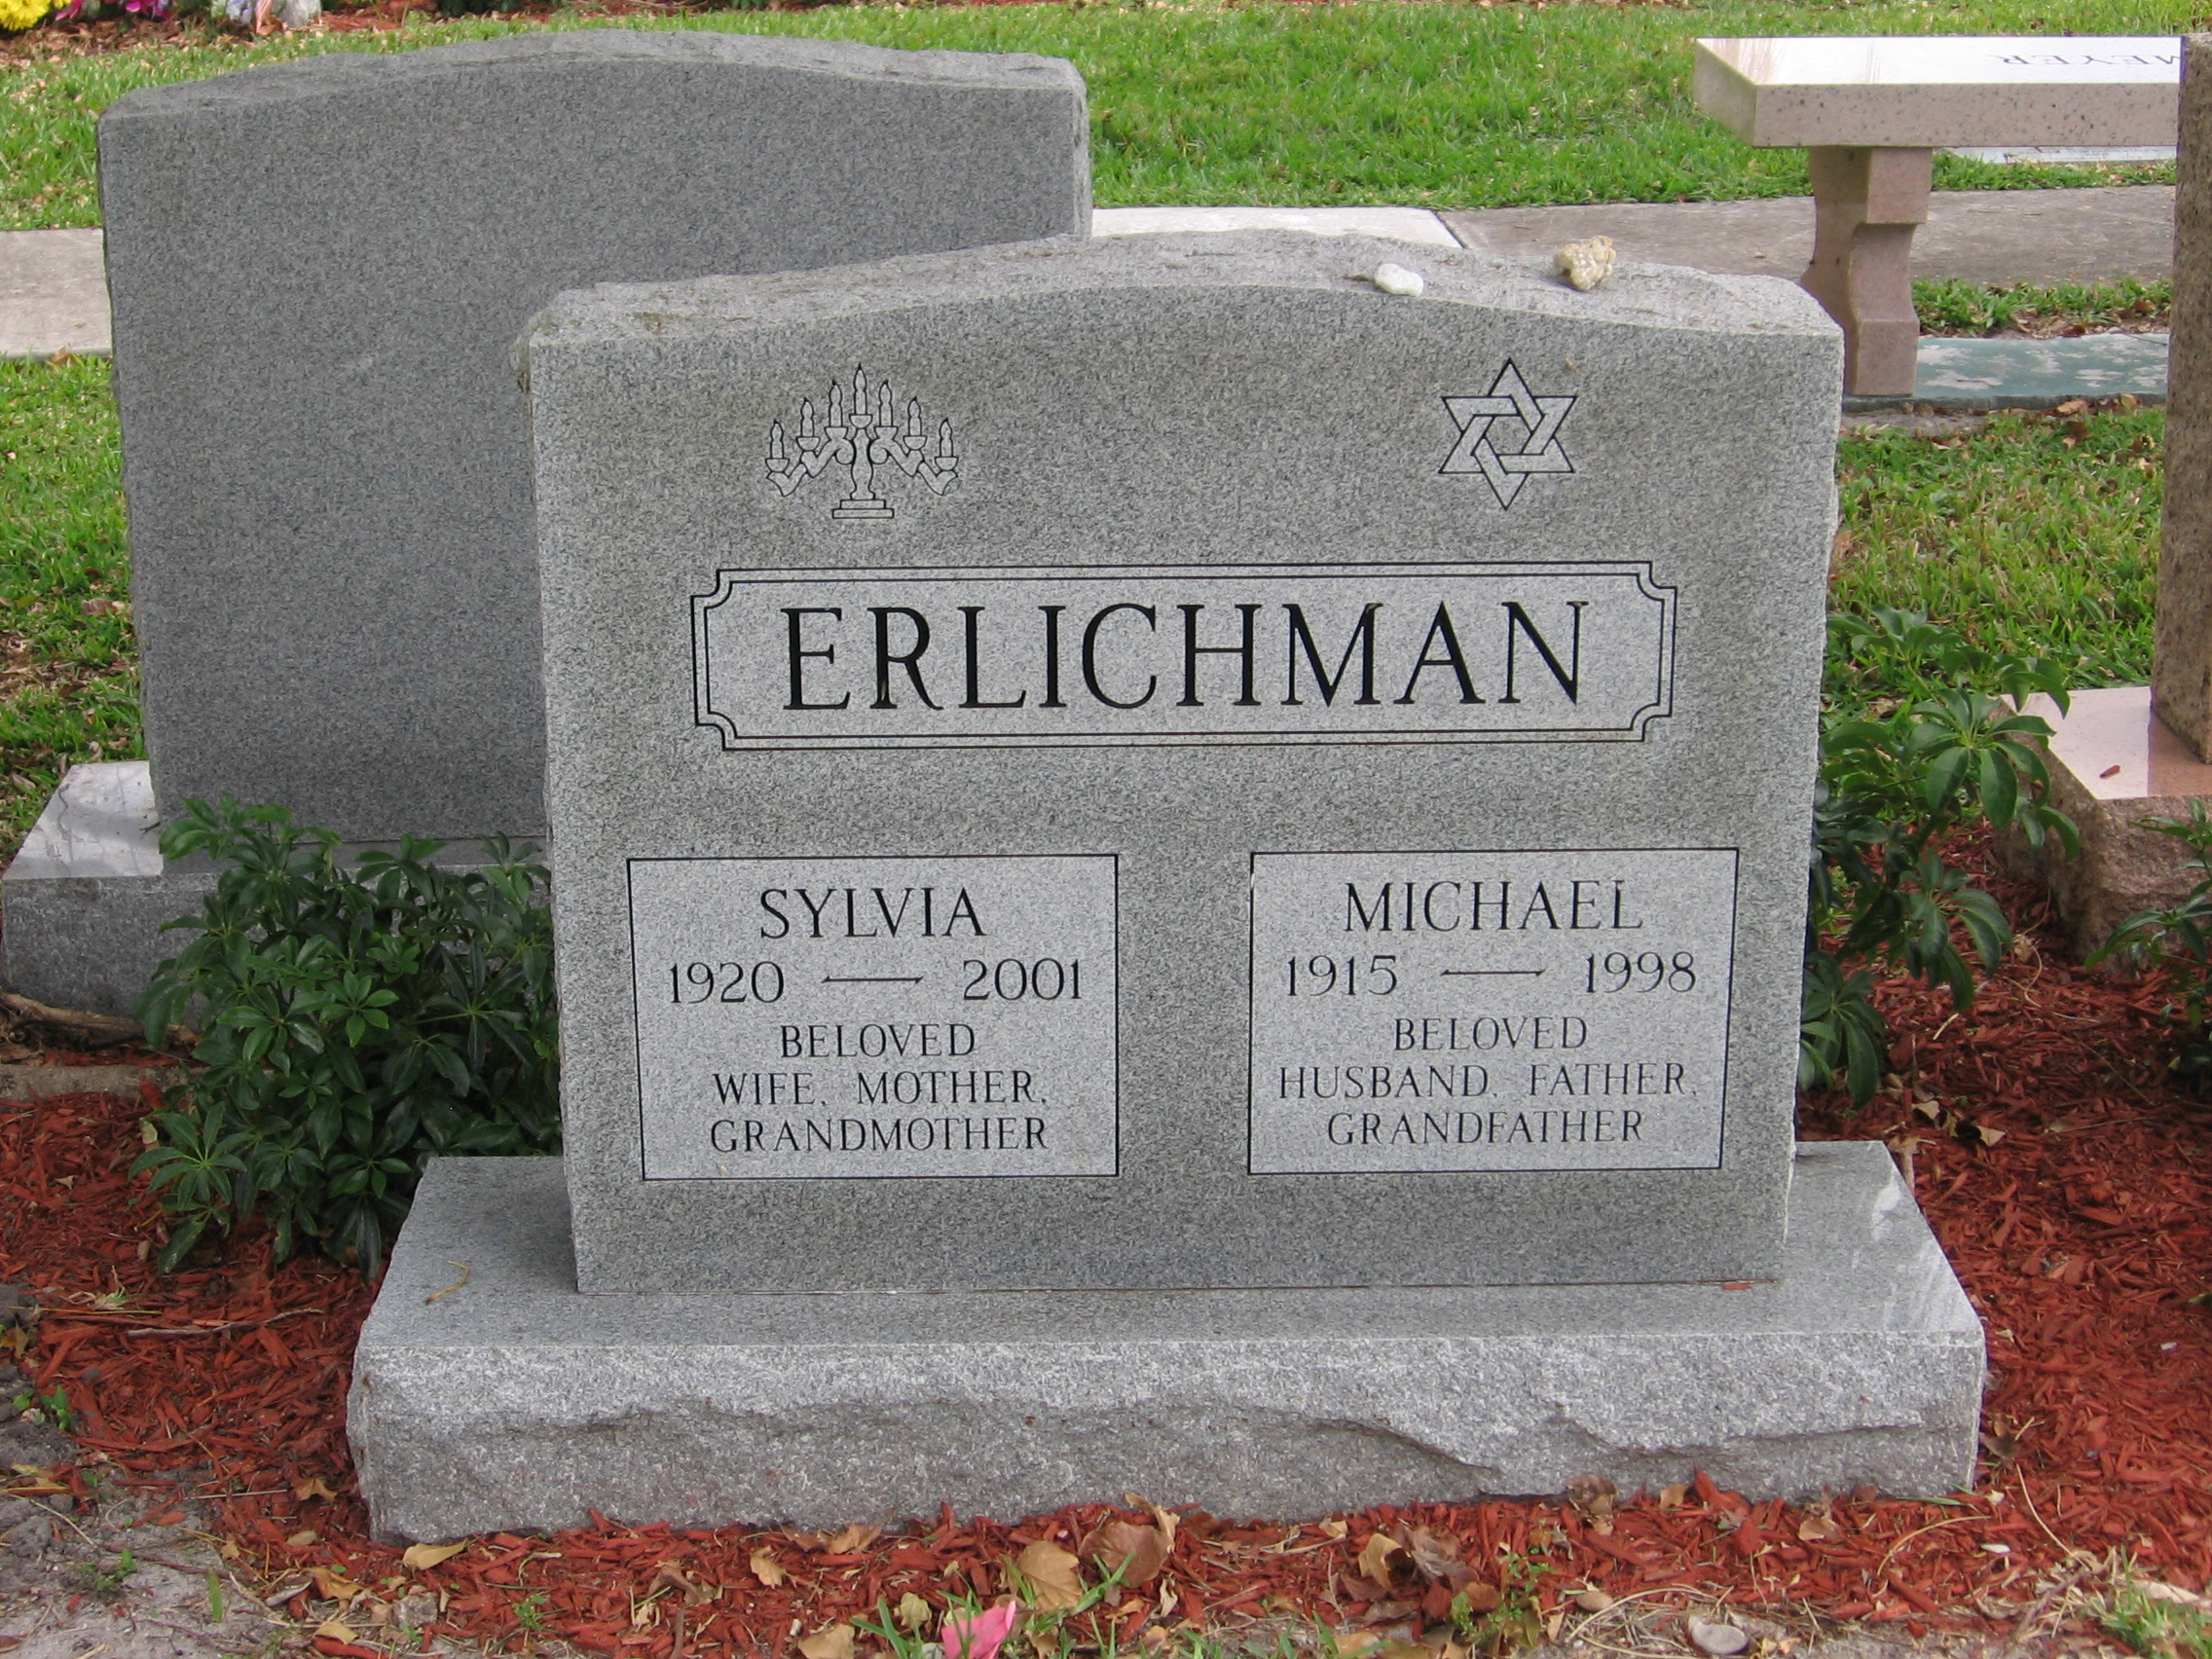 Michael Erlichman